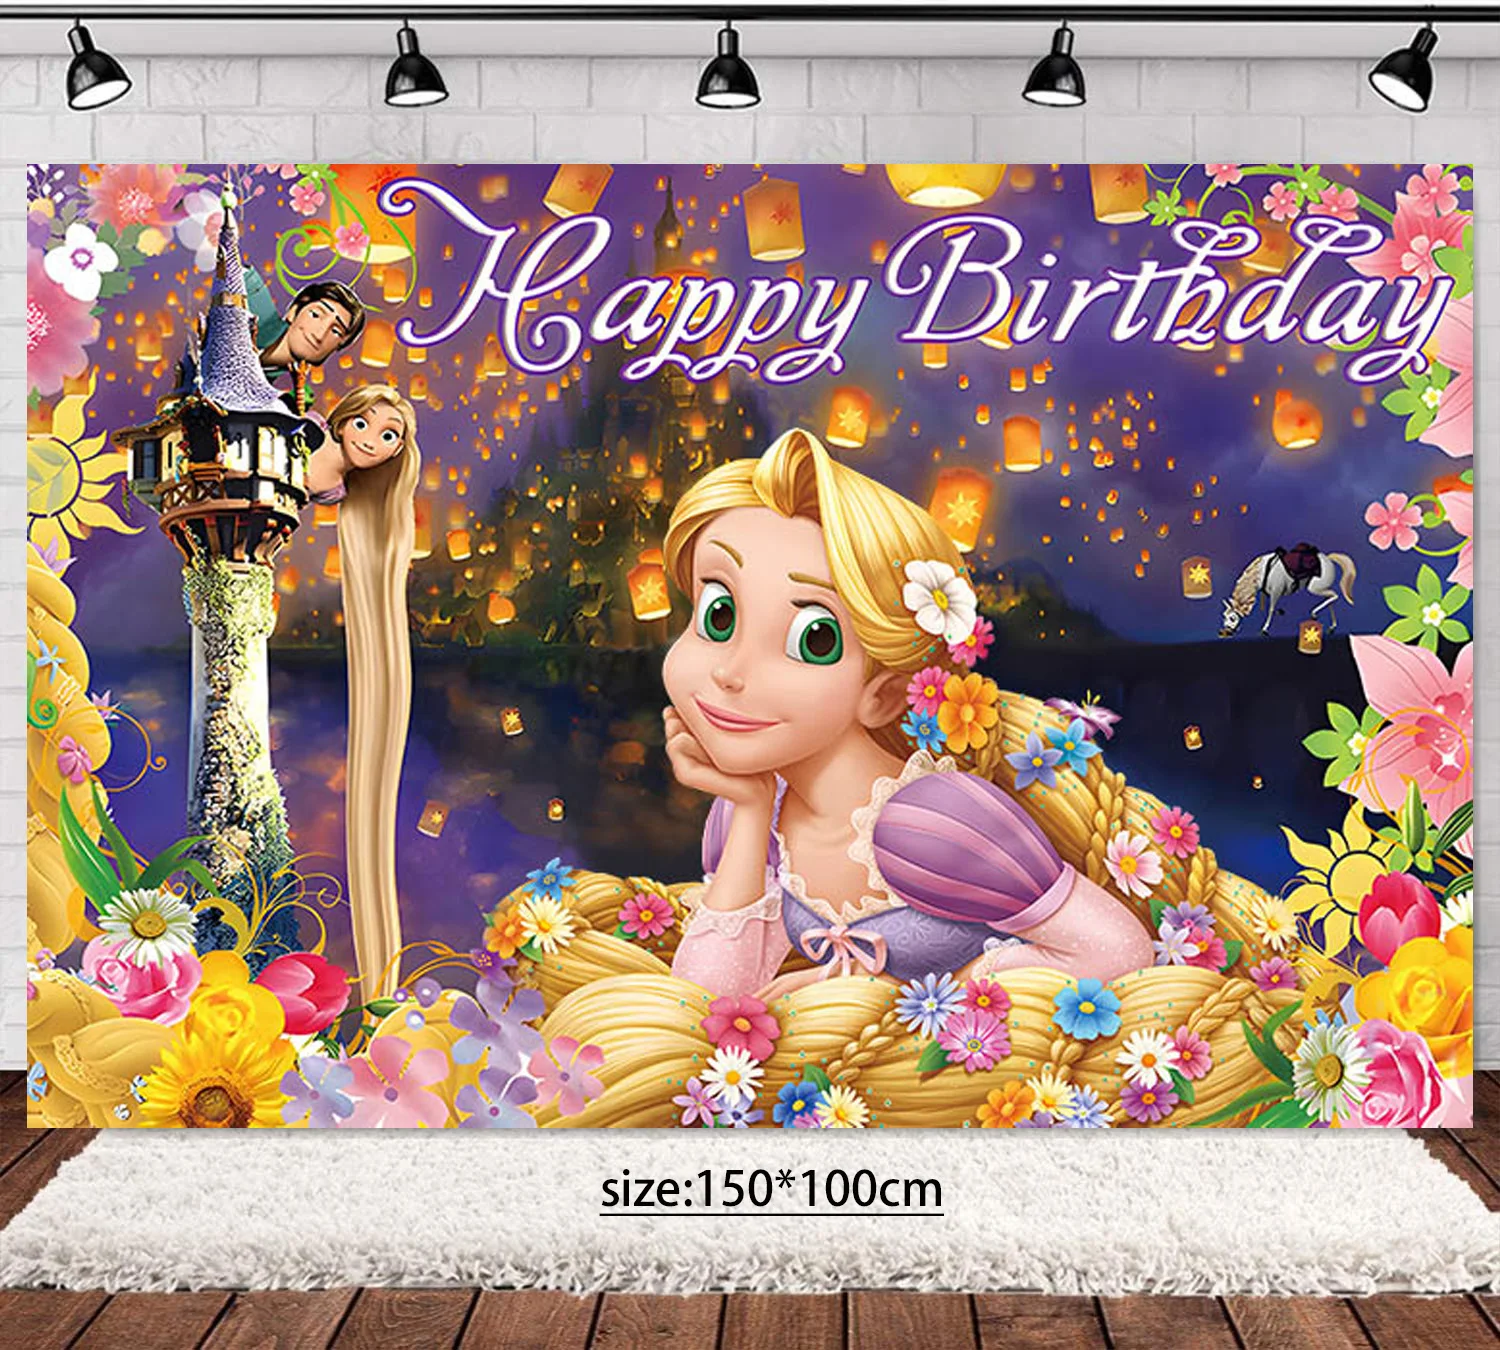 Disney Tangled Rapunzel Princess decoraciones para fiestas, vasos de papel desechables, platos, Pancarta, globos para niñas, suministros para fiestas de cumpleaños